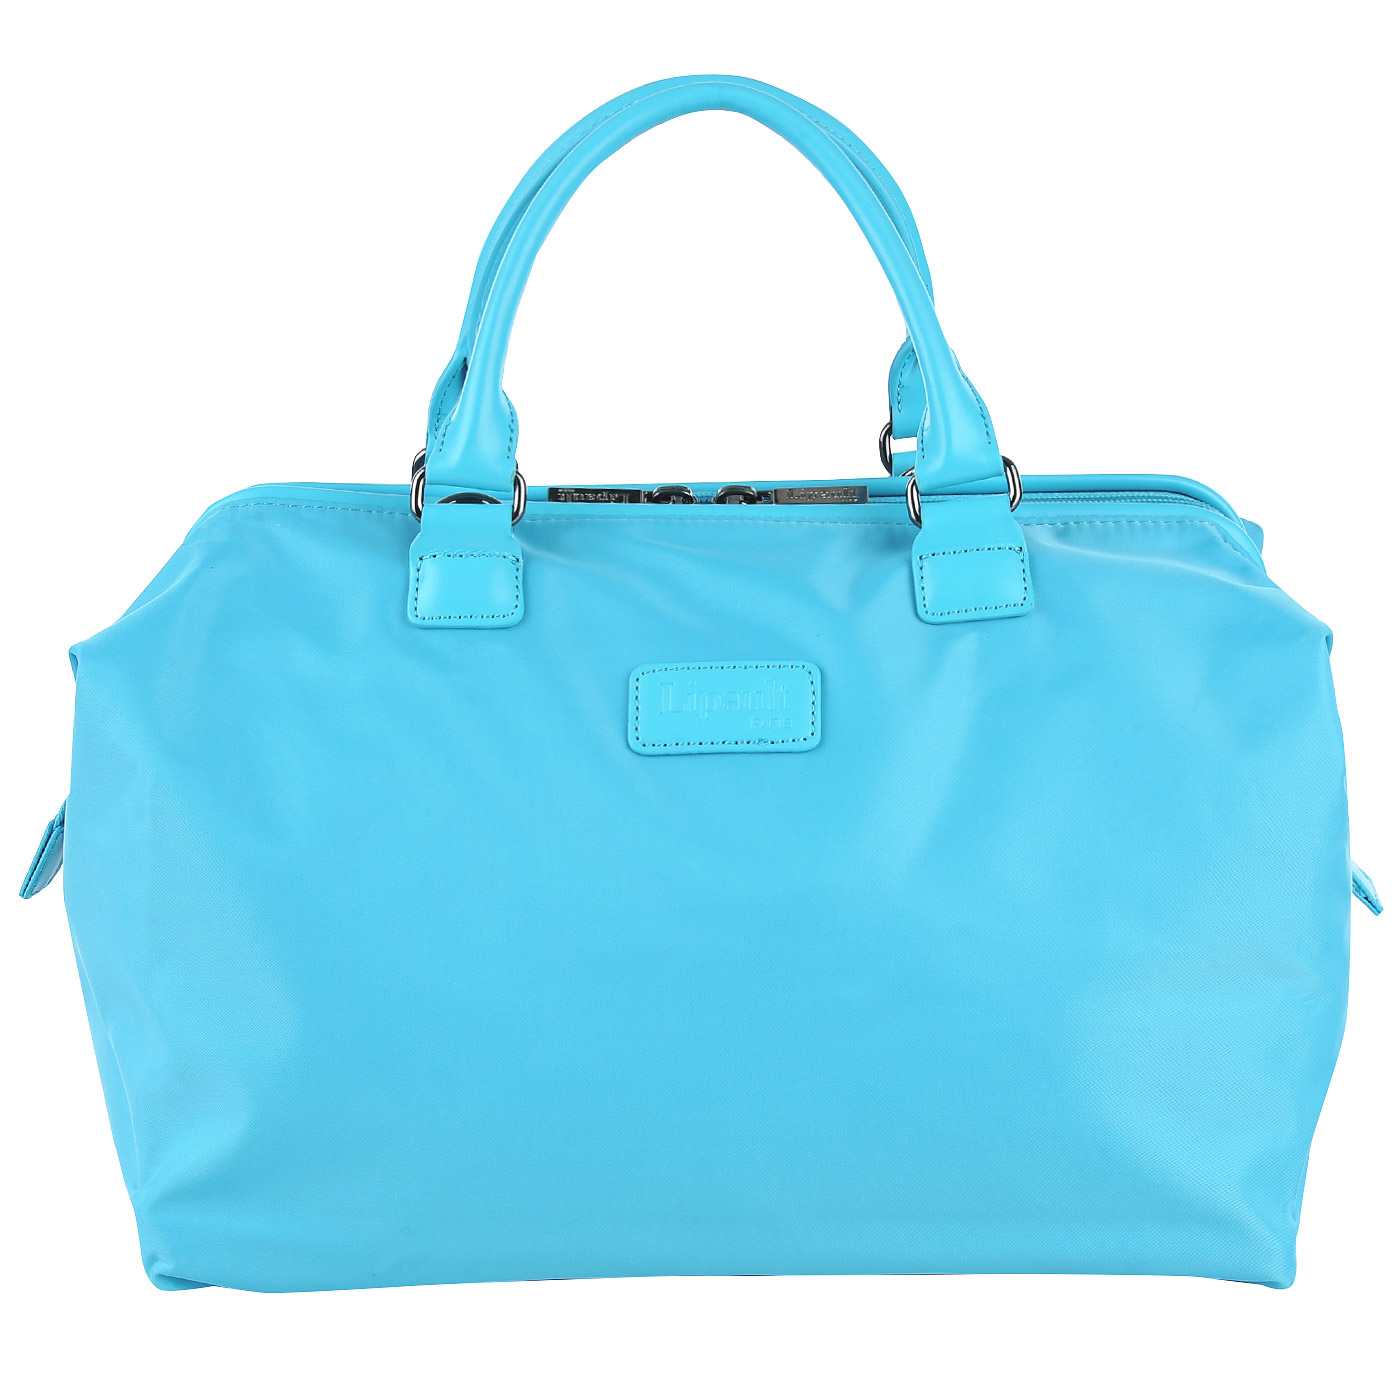 Текстильная дорожная сумка голубого цвета Lipault